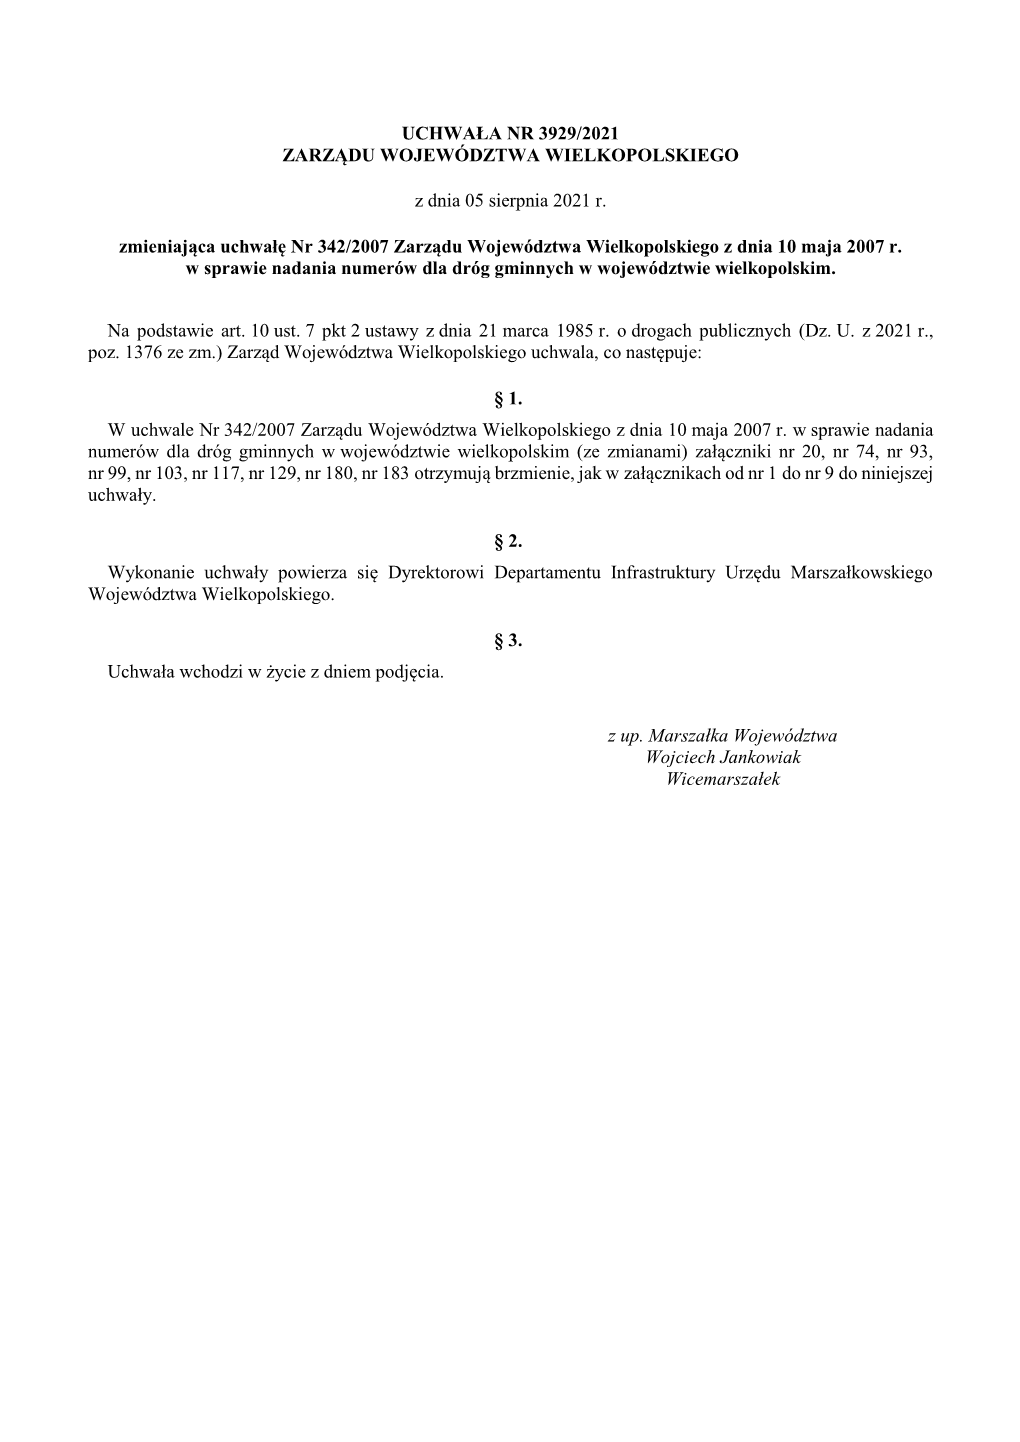 Uchwała Nr 3929/2021 Zarządu Województwa Wielkopolskiego